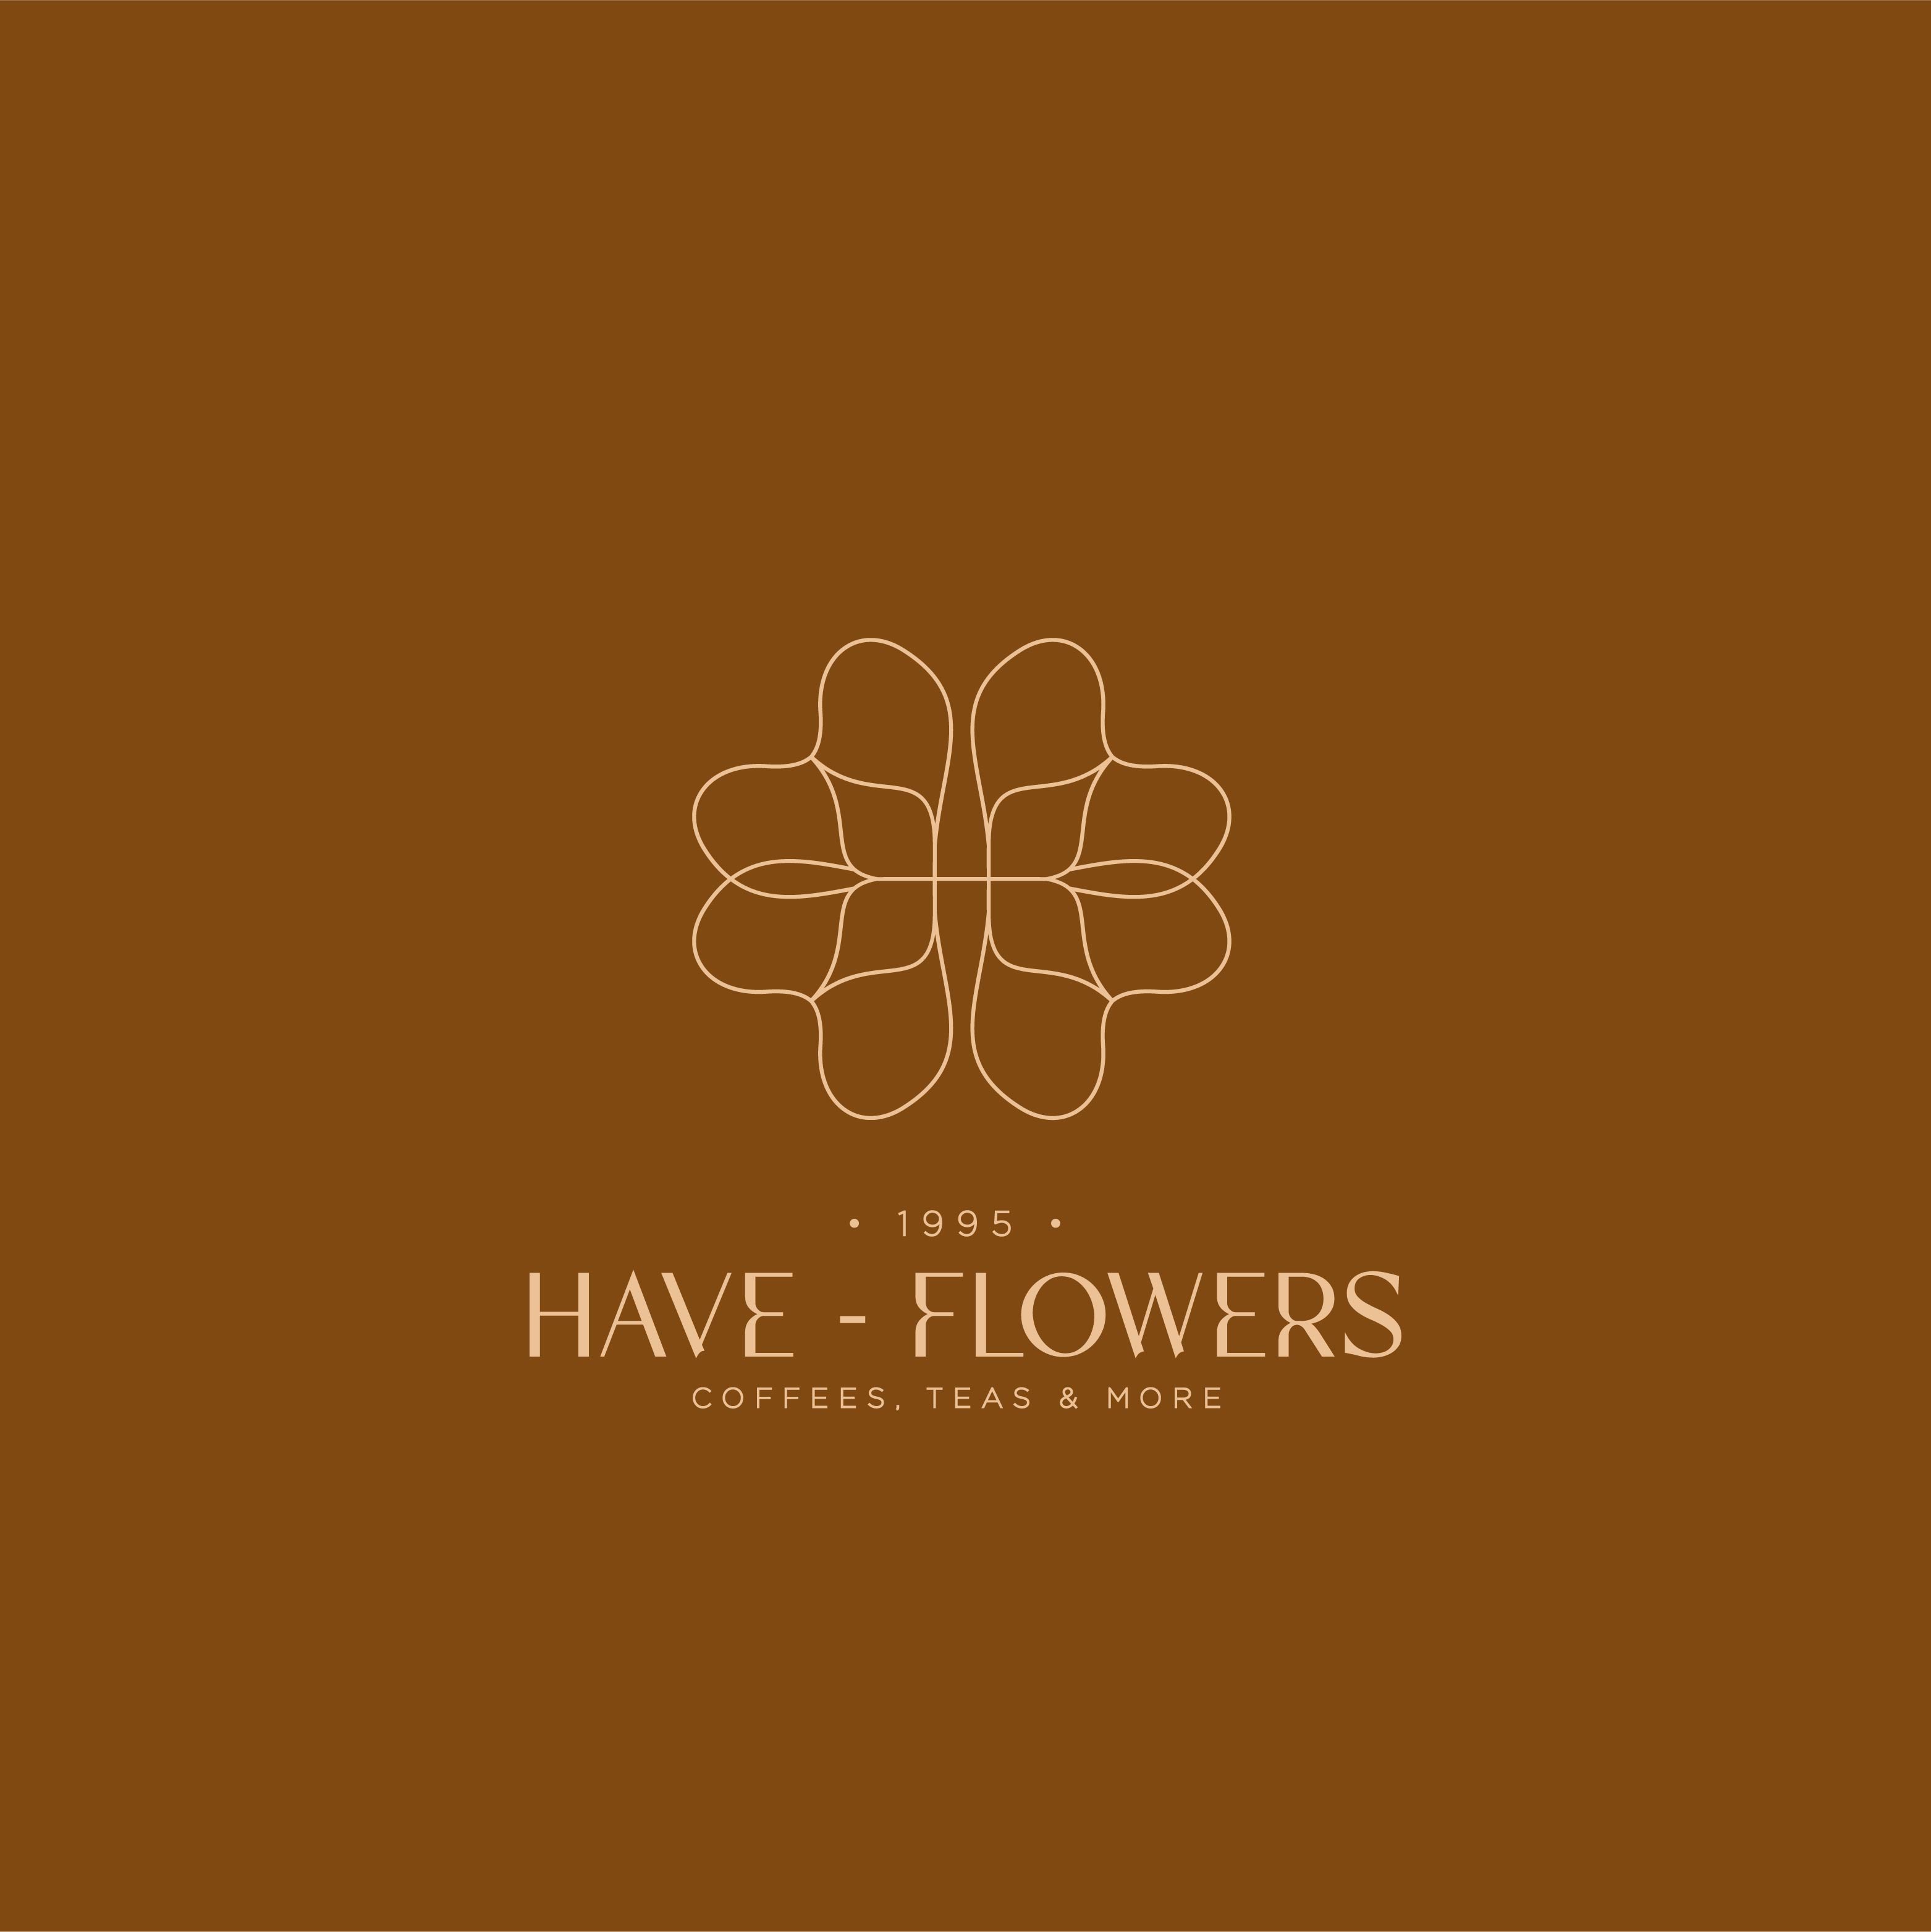 Have - Flowers FN-03.jpg